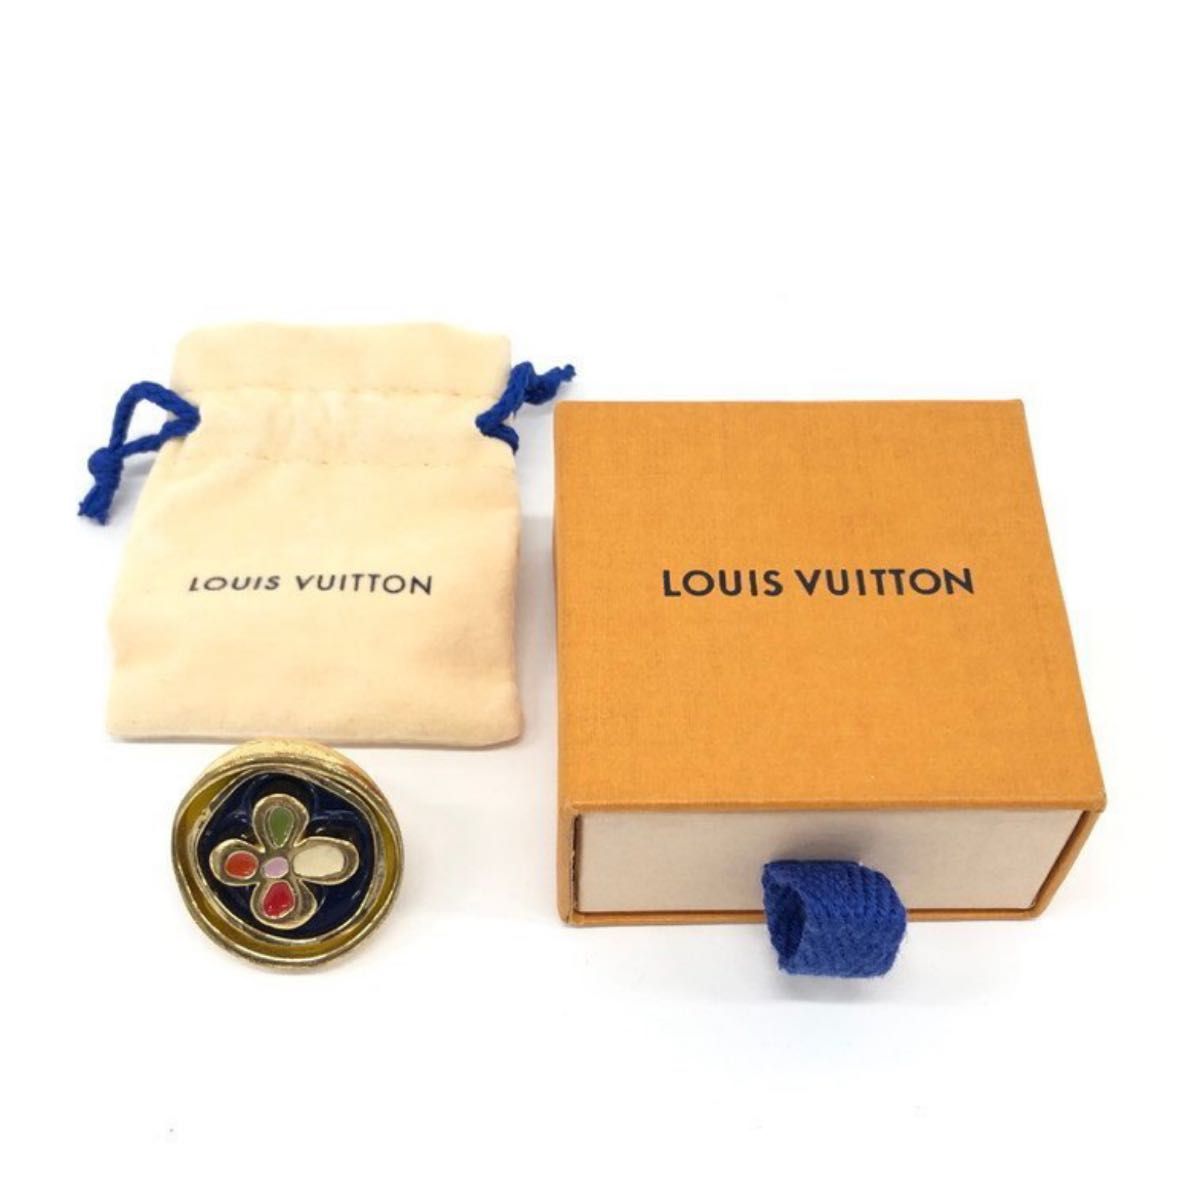 LOUIS VUITTON ルイヴィトン リング 金色 花 12号 箱付き アクセサリー ゴールドカラー